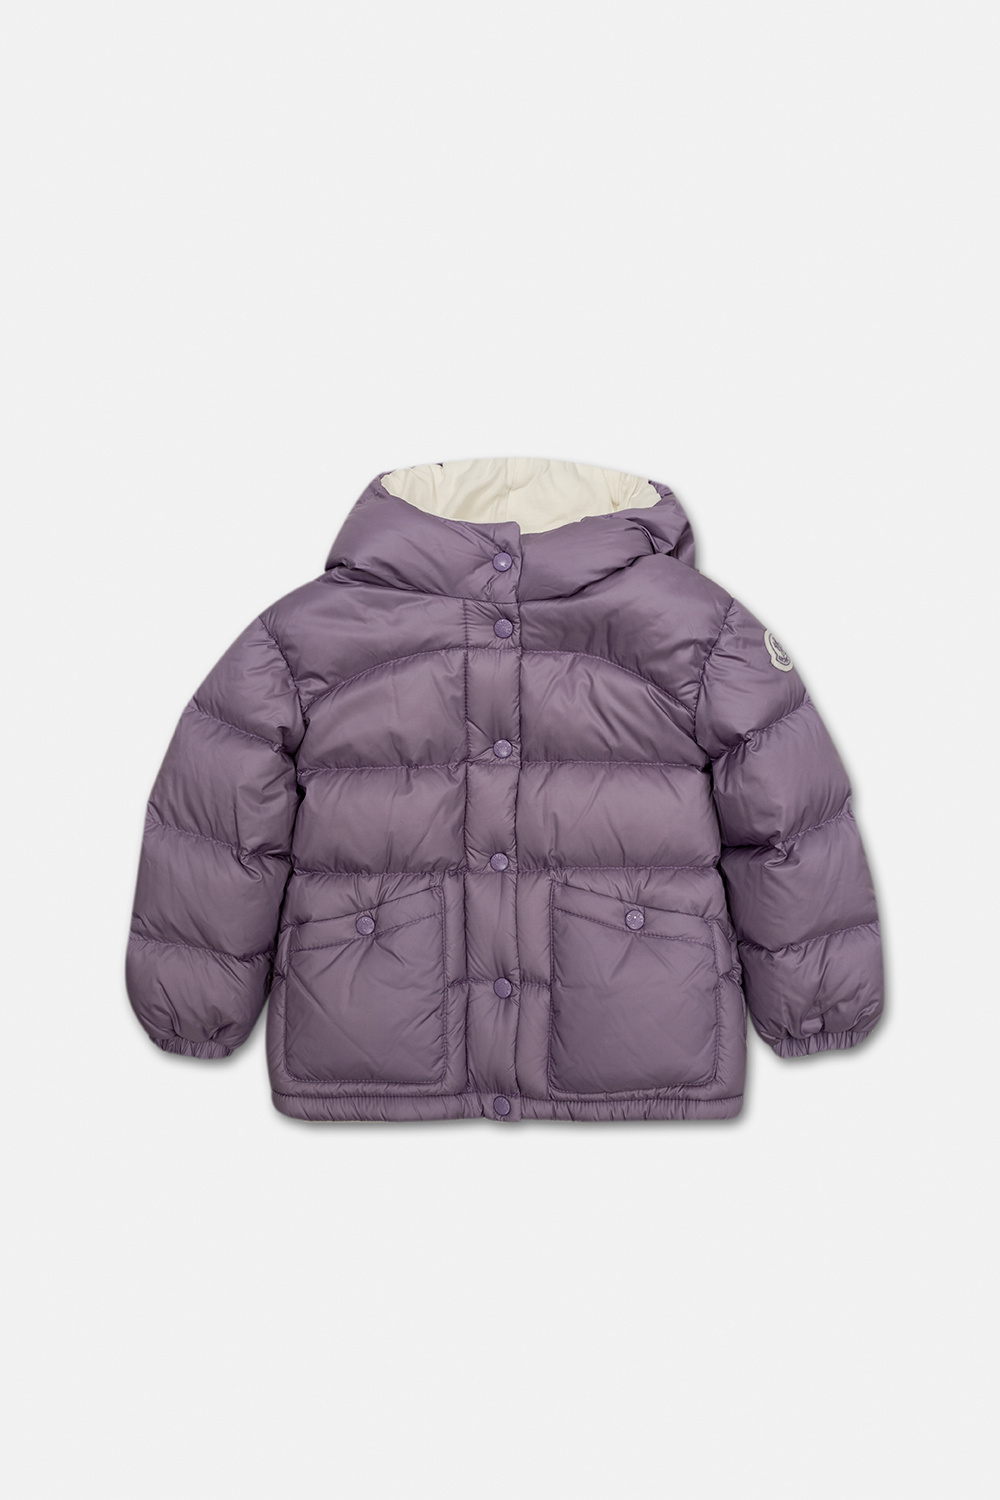 Moncler Enfant ’Bardanette’ down french jacket